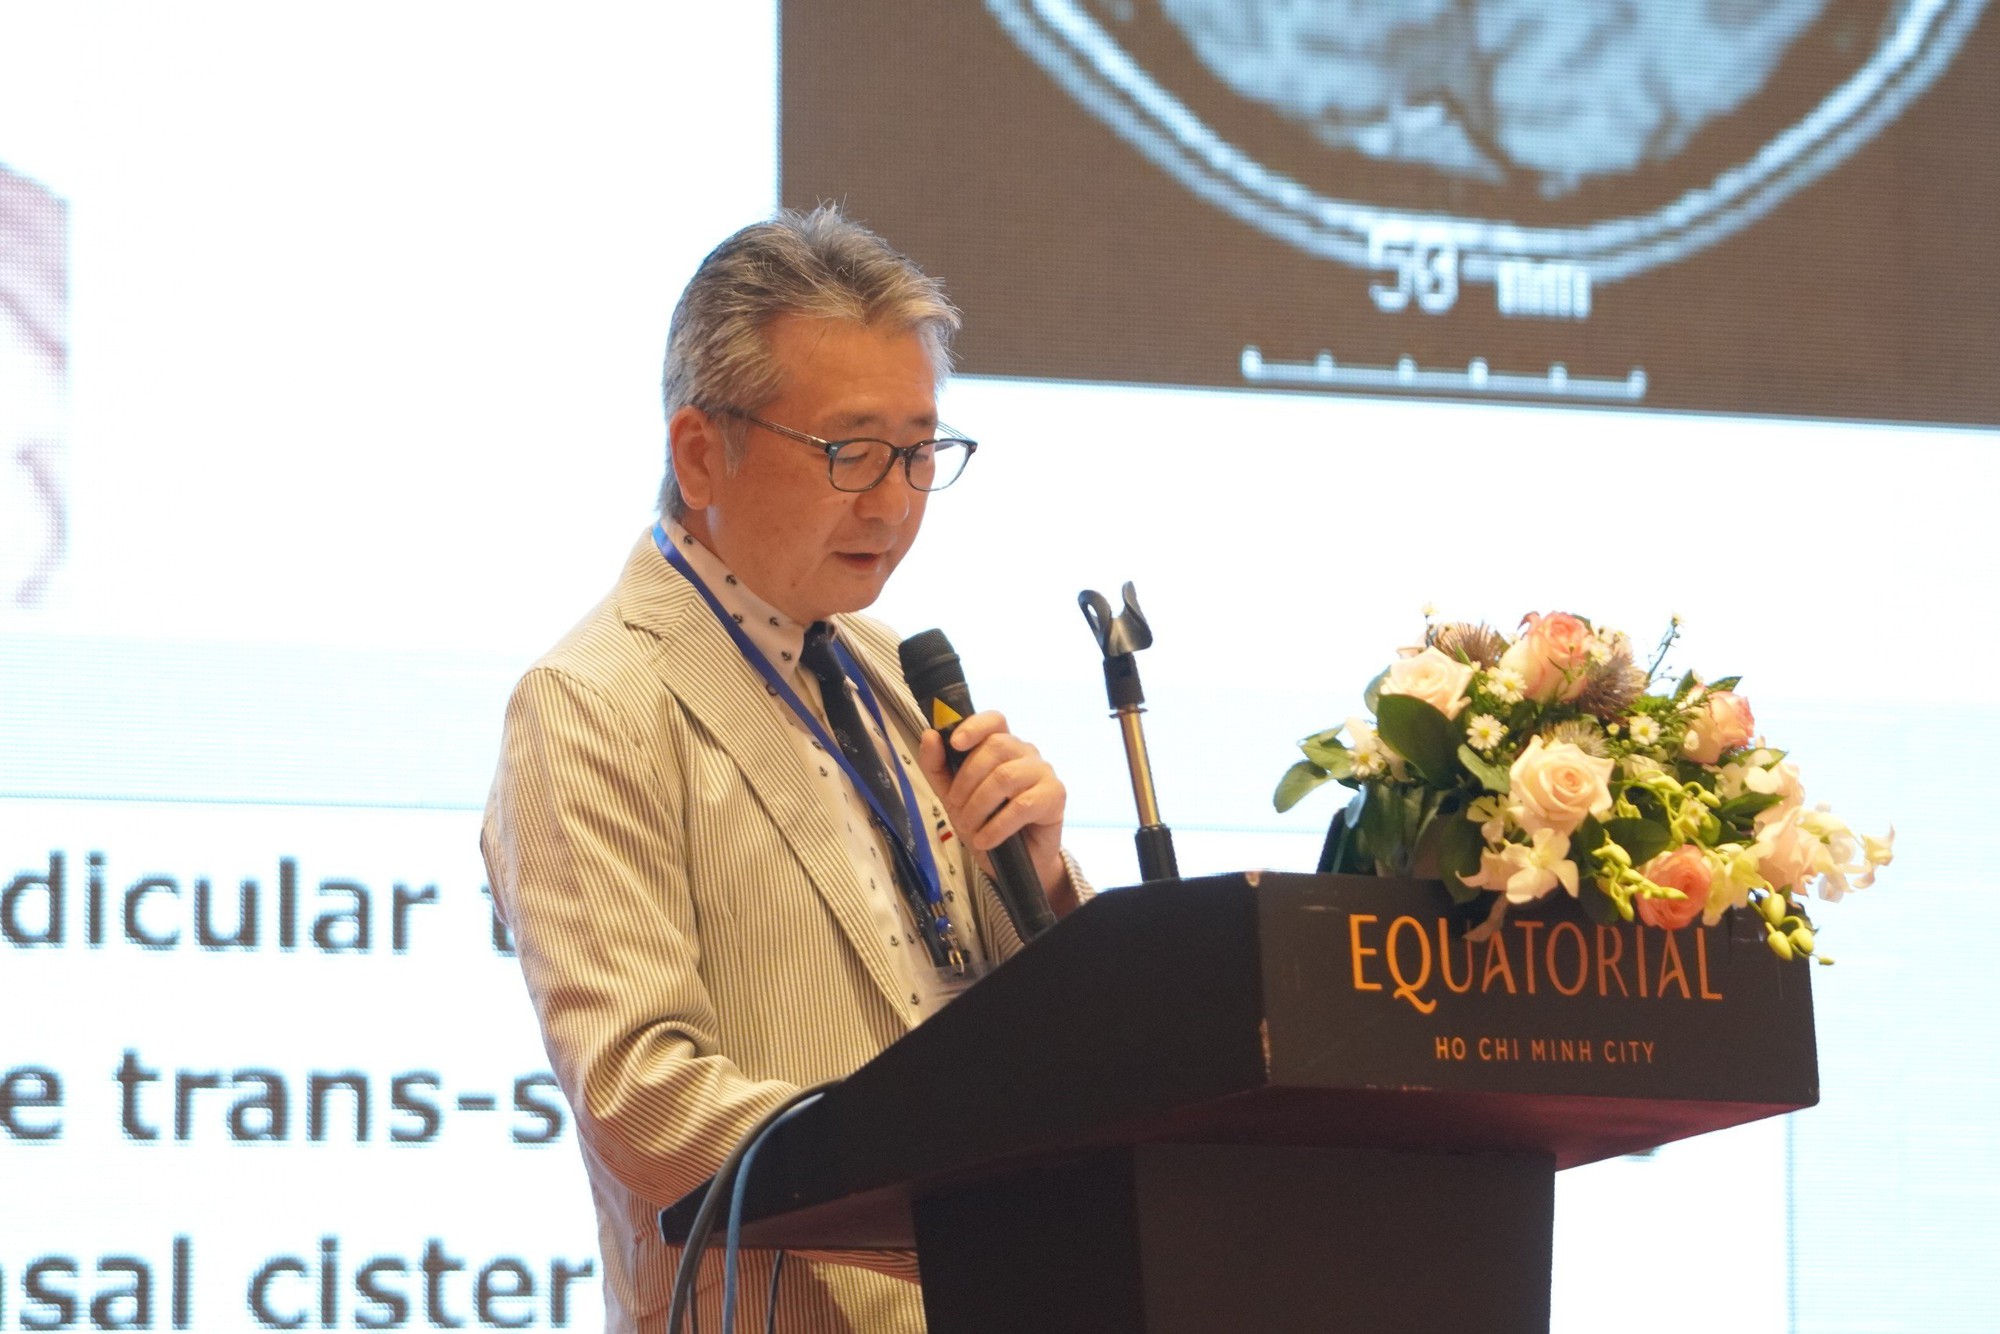 Hội nghị phẫu thuật động kinh châu Á lần đầu tổ chức tại Việt Nam - Ảnh 1.